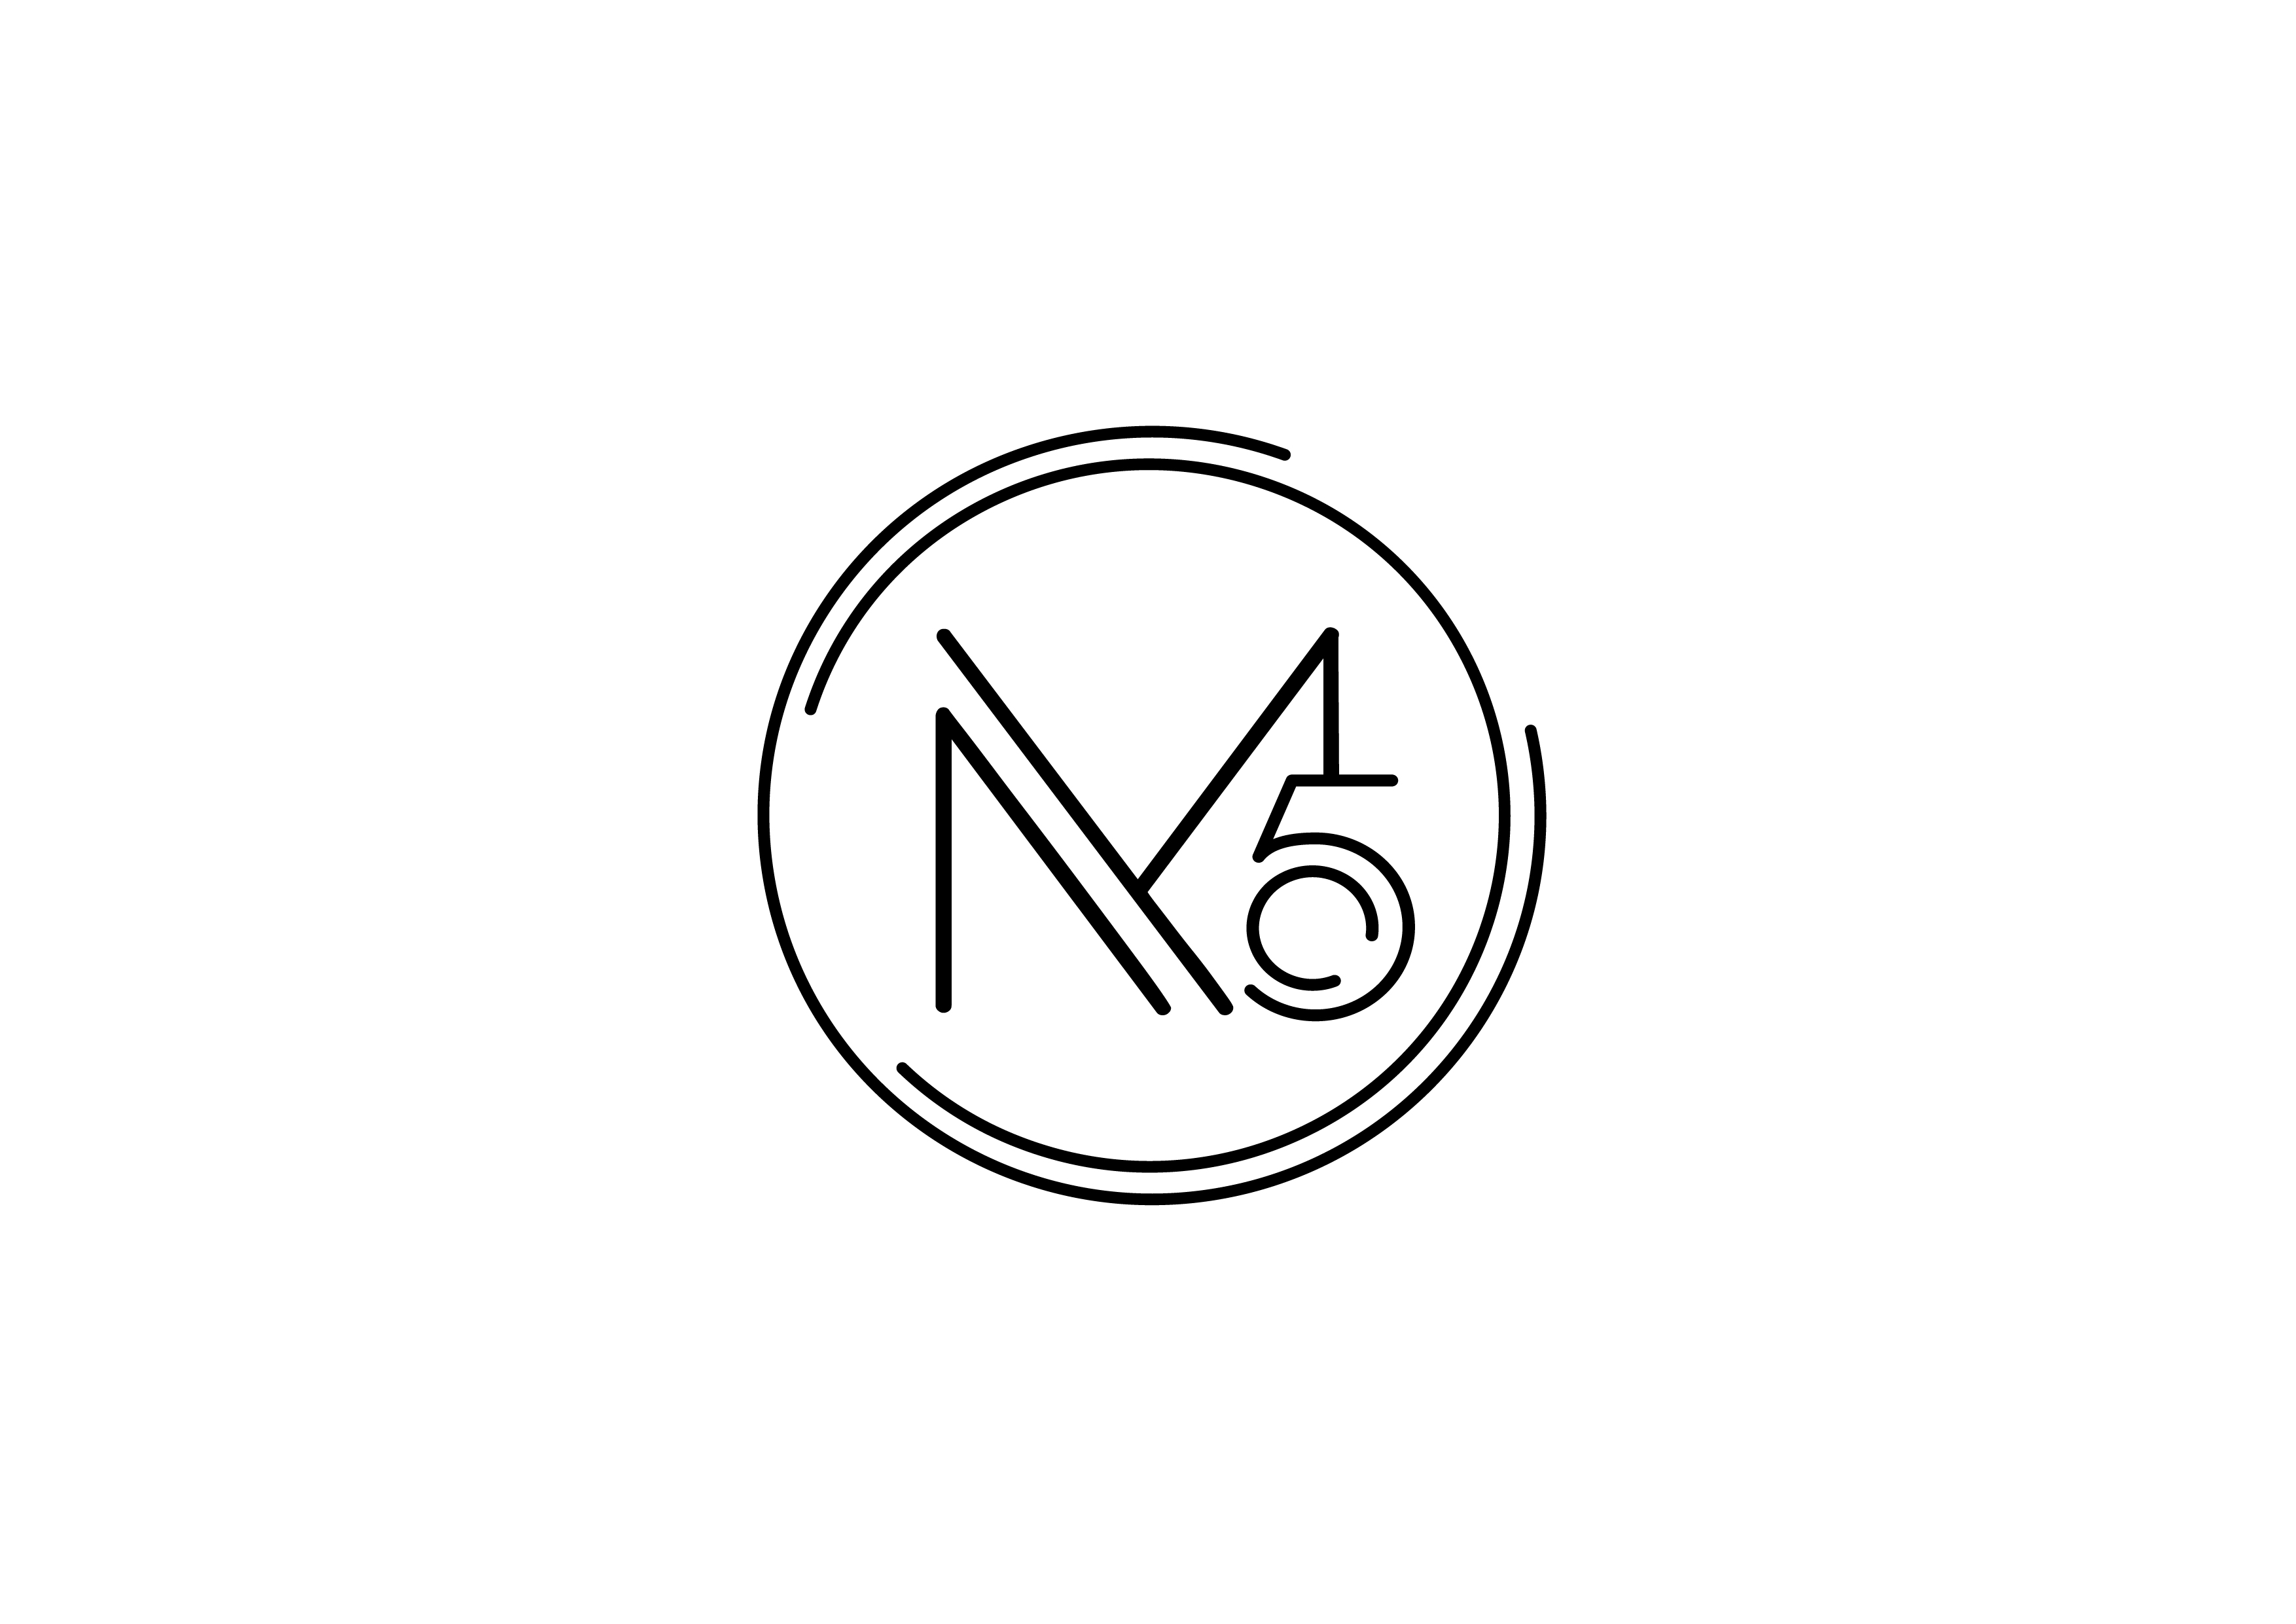 Hong Kong Flower Shop GGB brands M5 Concept